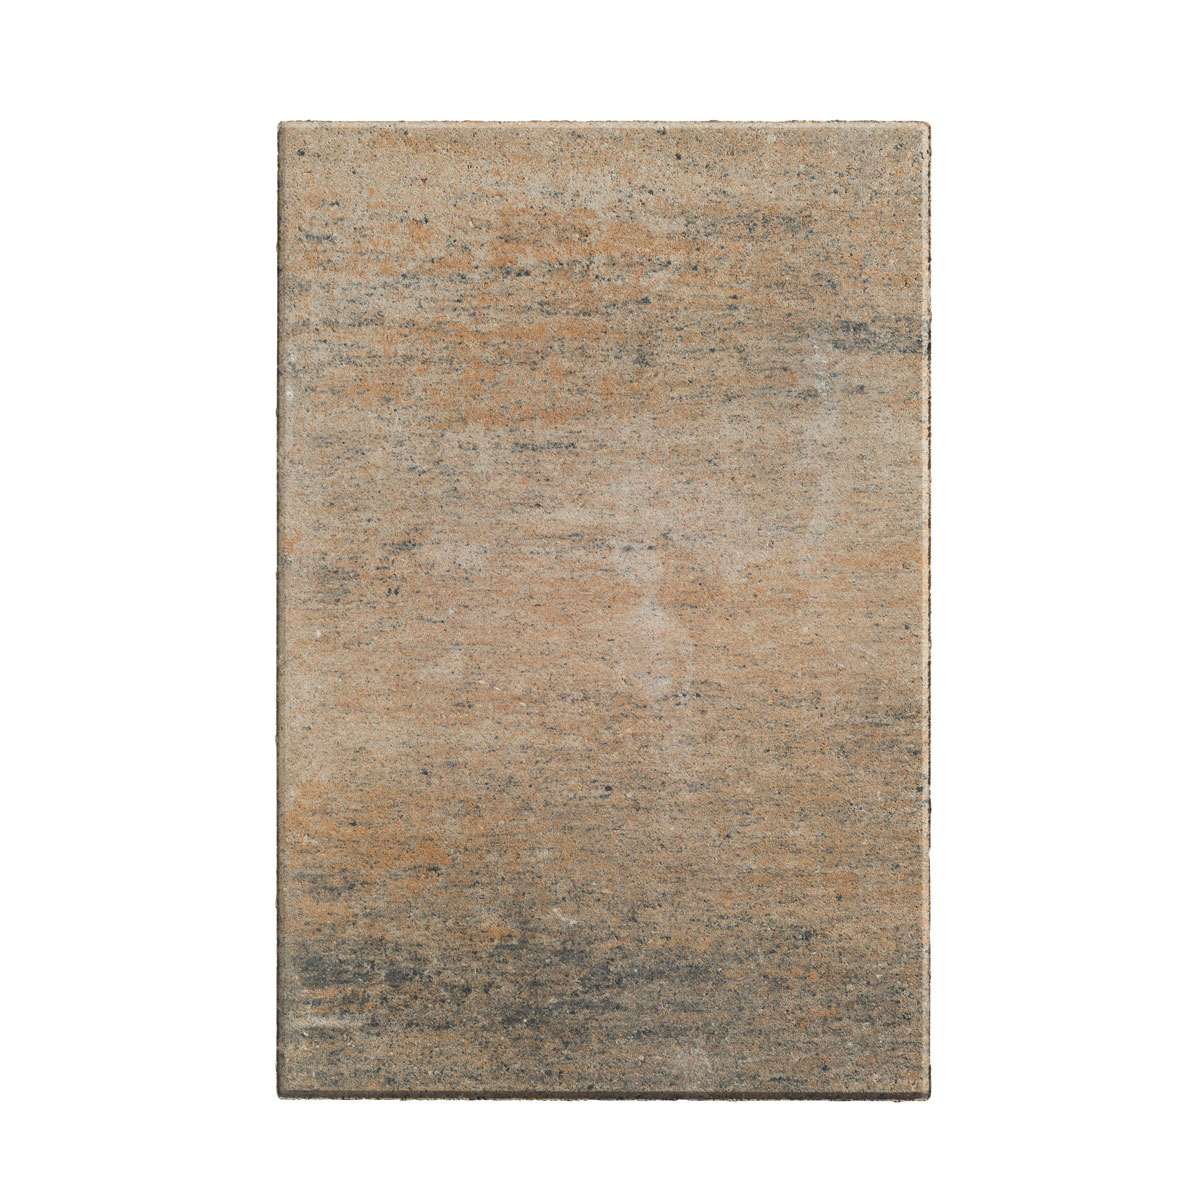 Diephaus Terrassenplatte No.1 Edition 60 x 40 cm Muschelkalk, mehrfarbig, 60x40